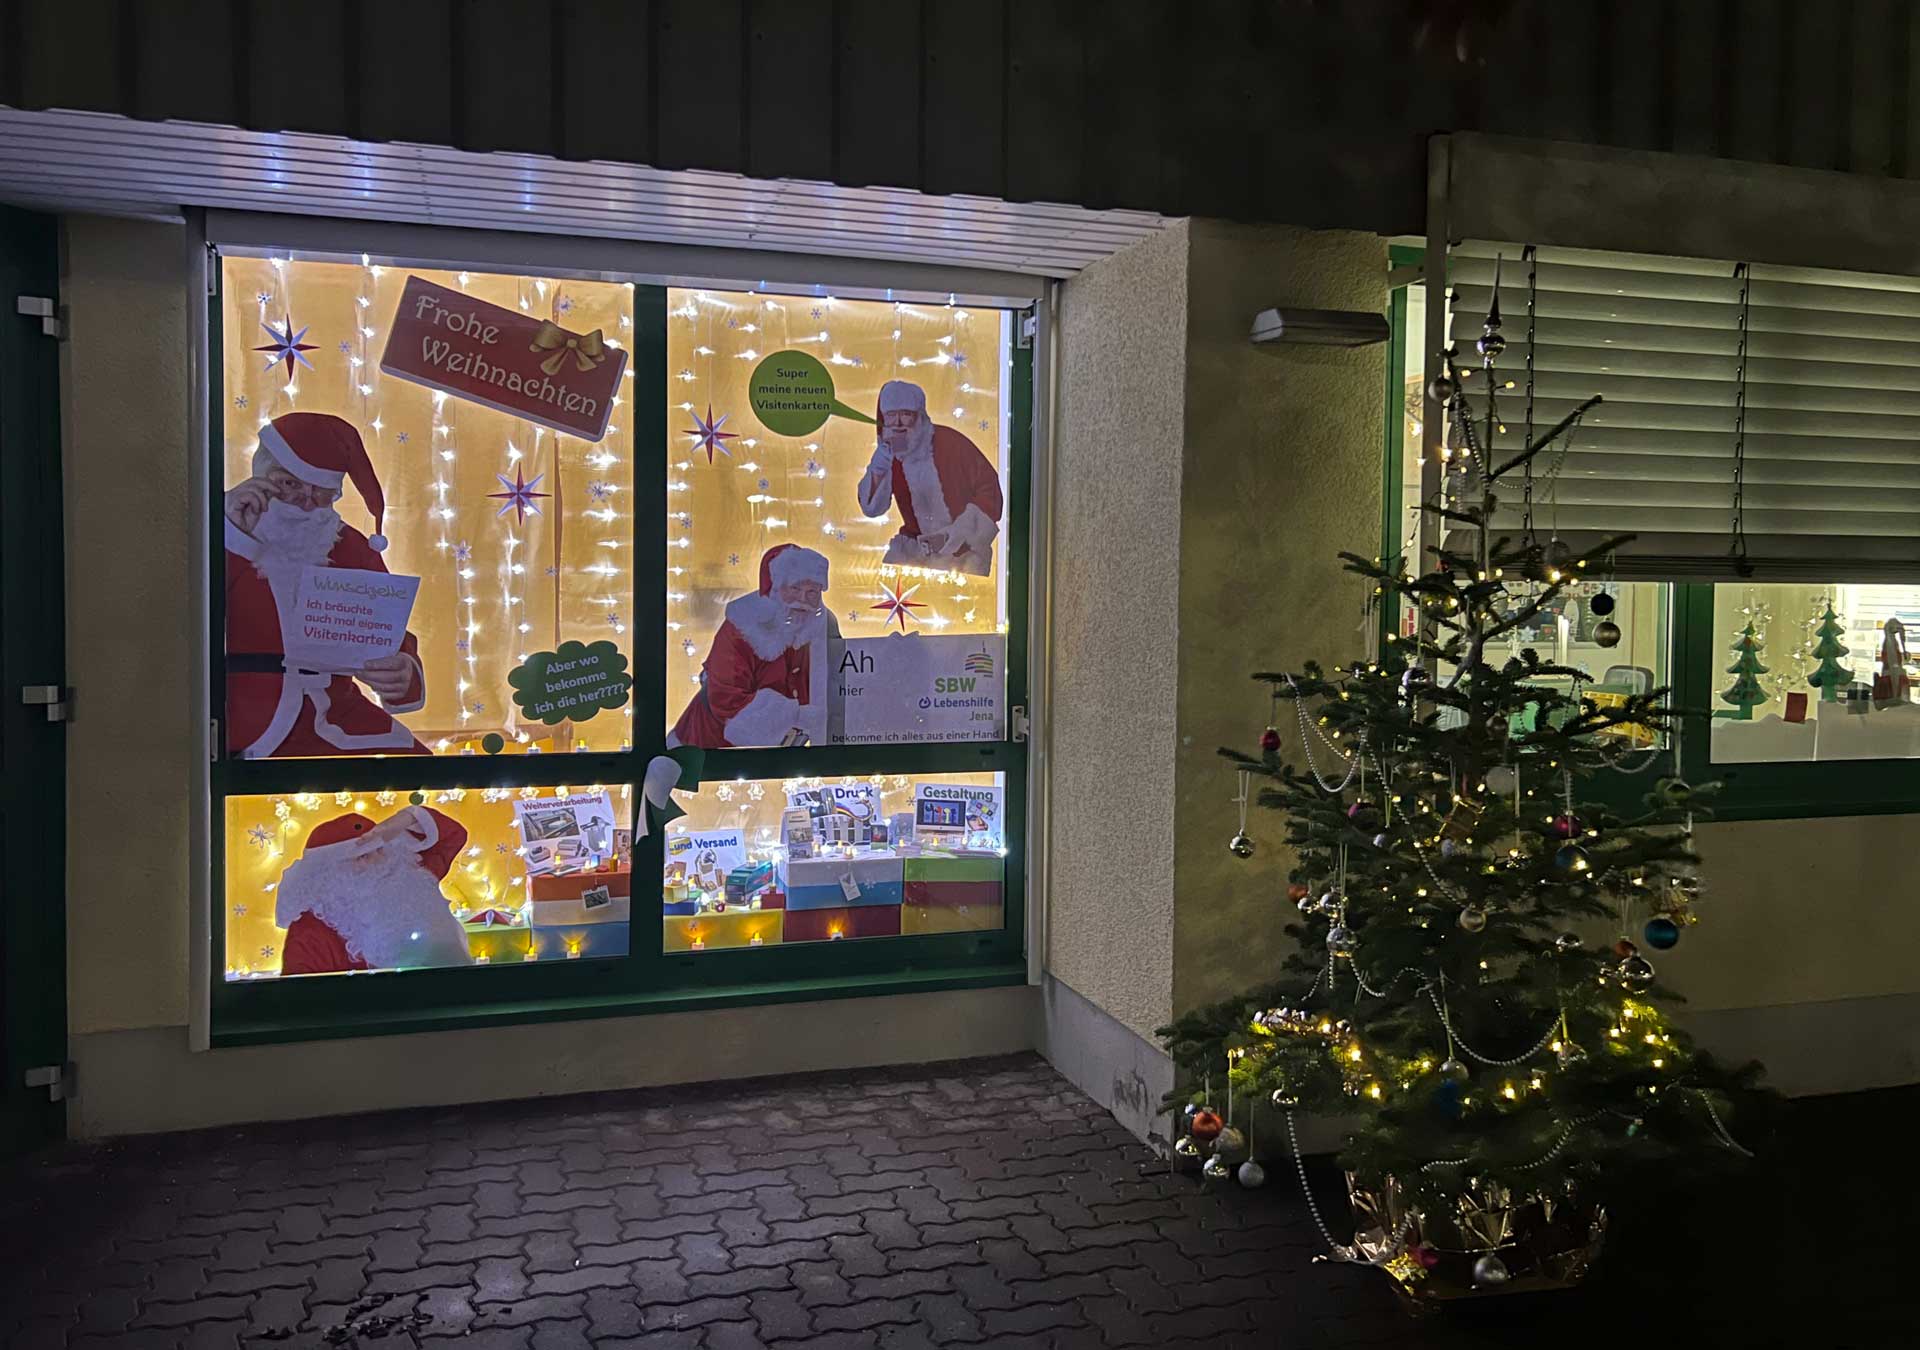 Das Bild hat eine weihnachtliche Abendstimmung. Rechts ist ein geschmückter Weihnachtsbaum, links ein geschnücktes Fenster mit Lichtern und Weihnachtsmännern, die sich eine Visitenkarte drucken wollen.